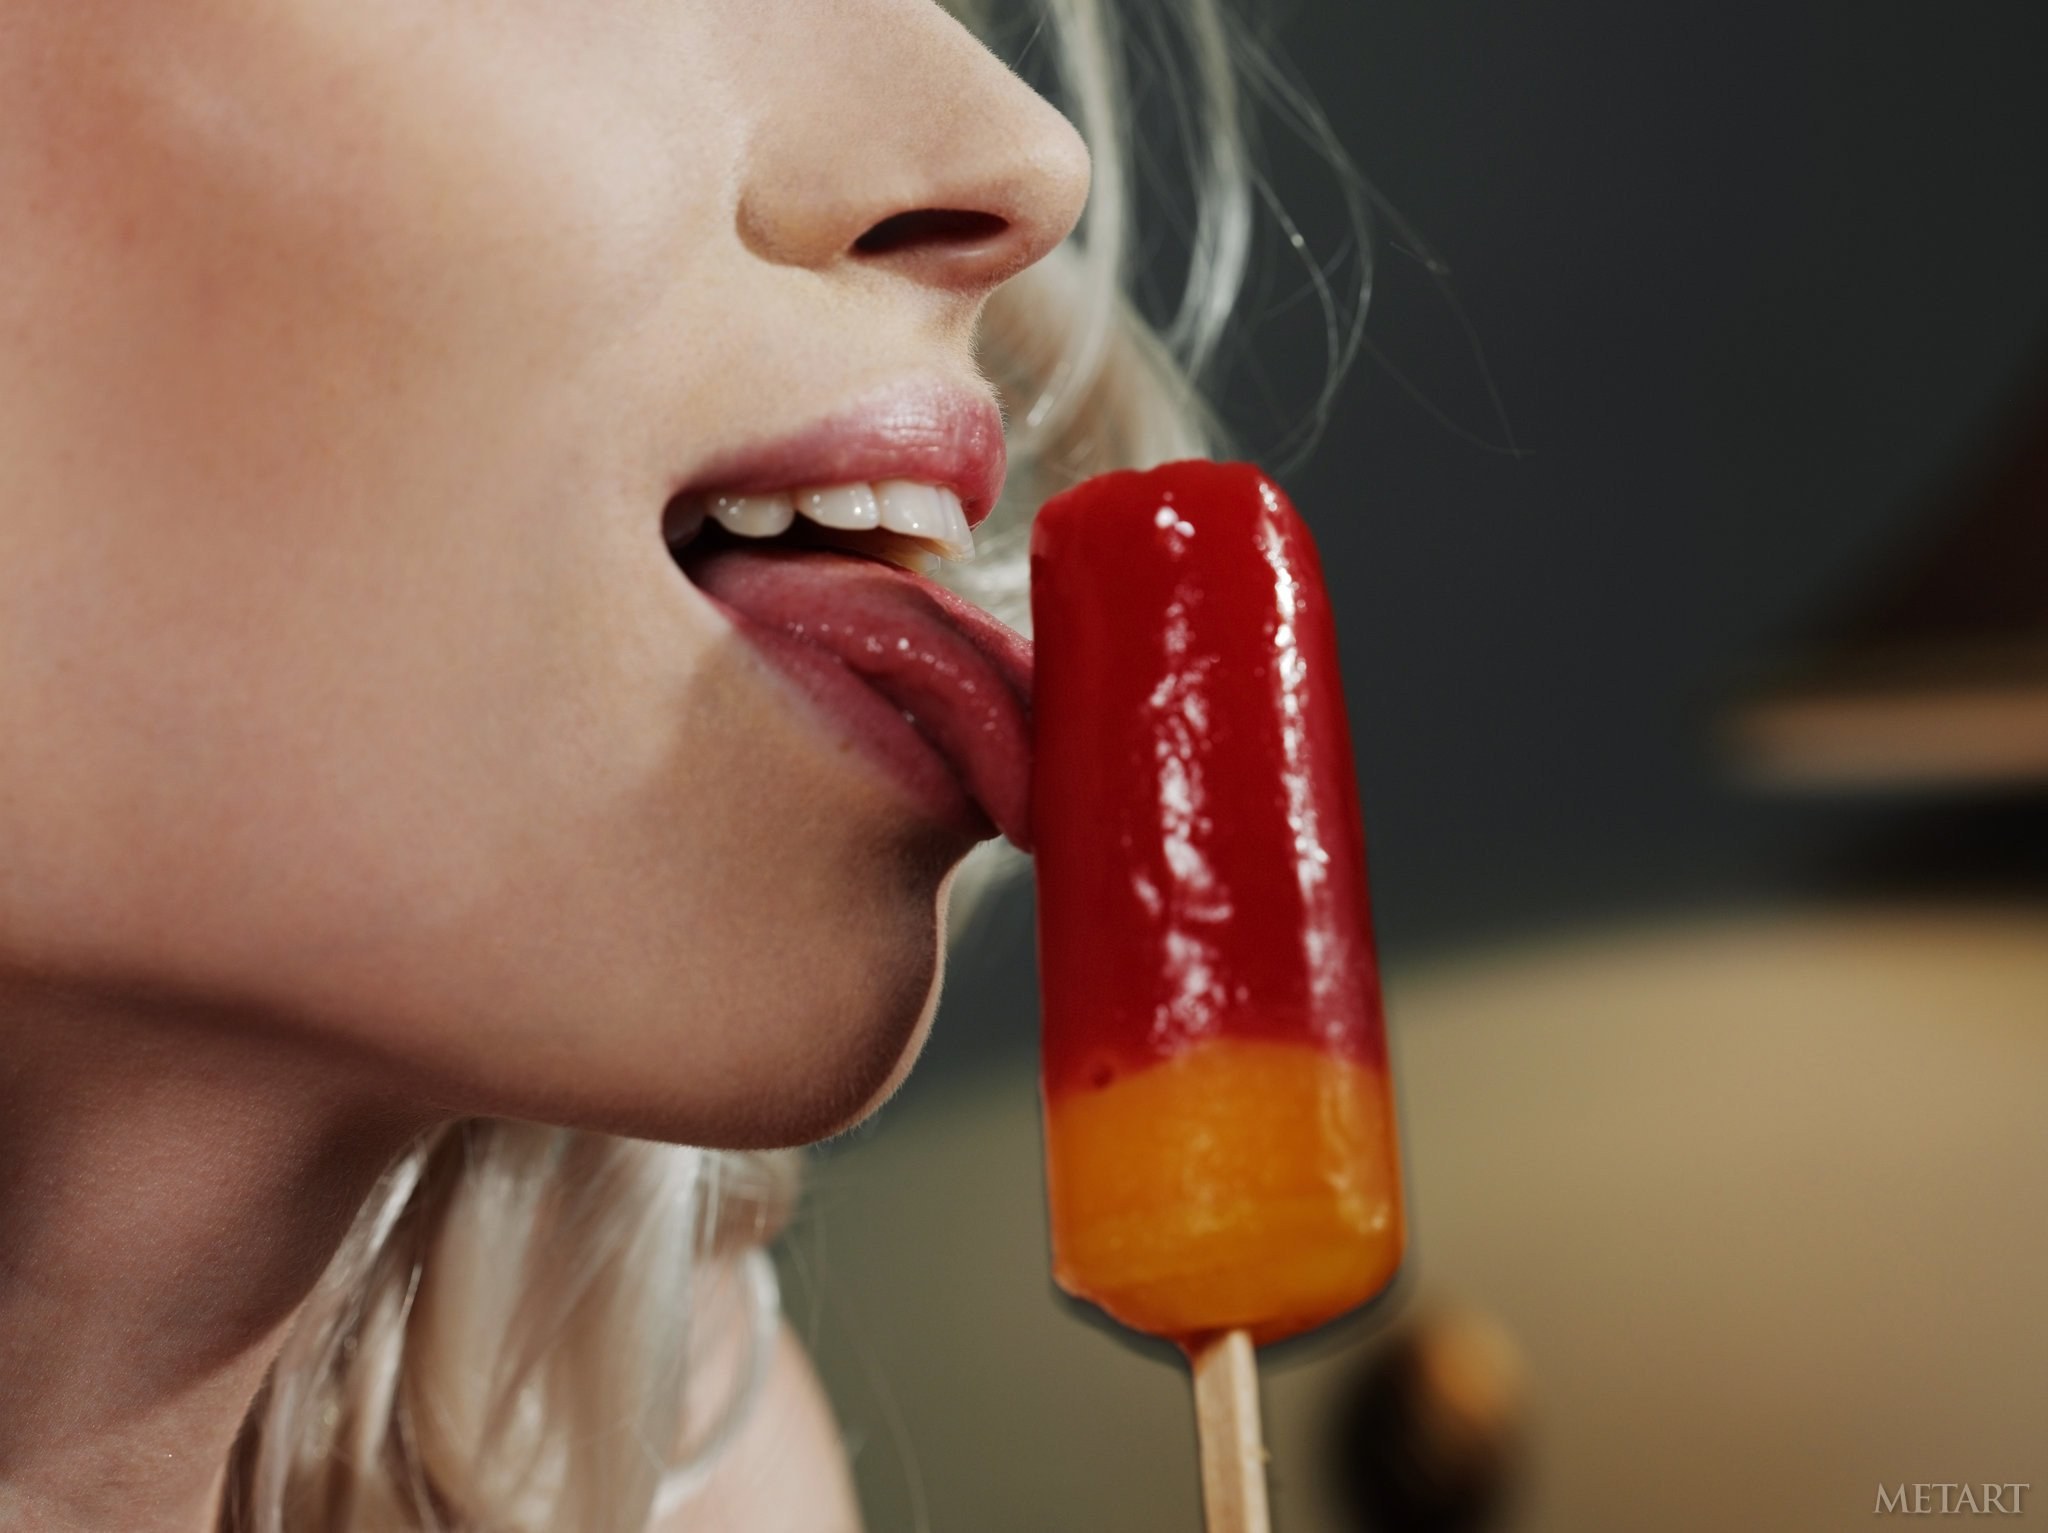 Сучка с большими сиськами ест мороженое - секс фото 